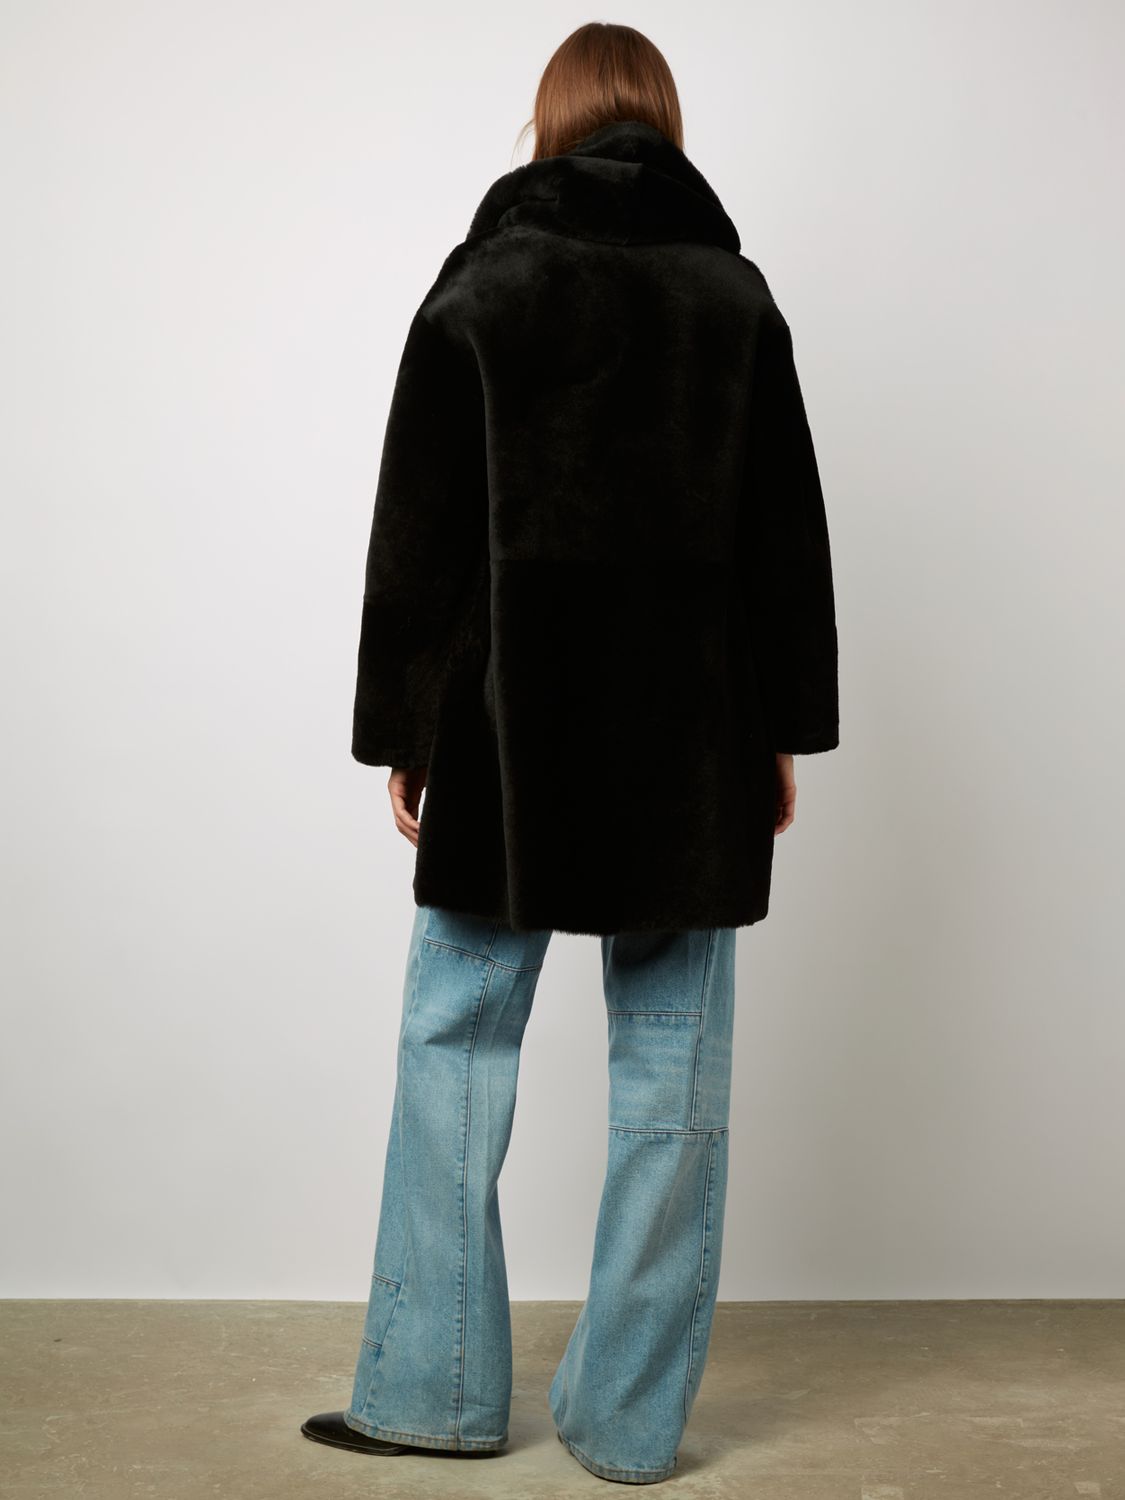 Gerard Darel Manfred Sheepskin Coat, Black at John Lewis & Partners